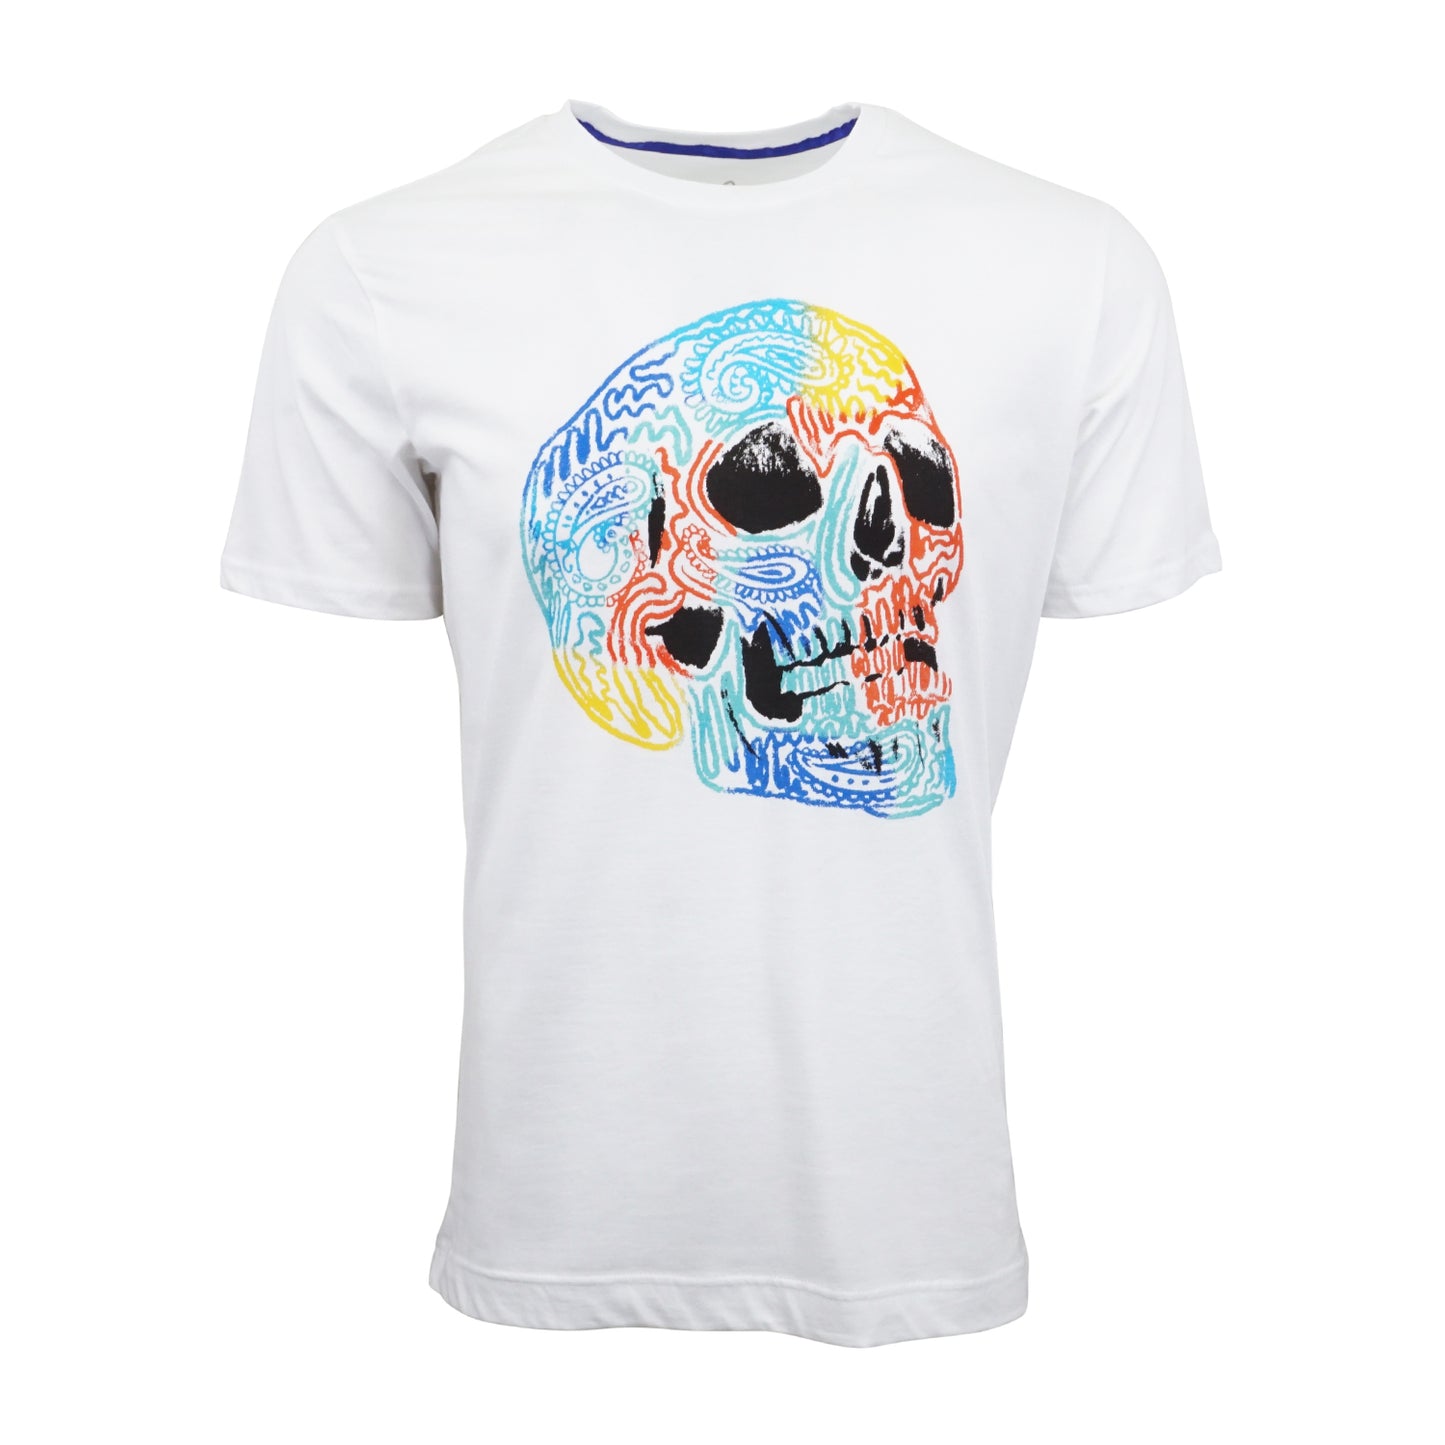 Robert Grapham Skull Graphic T shirt